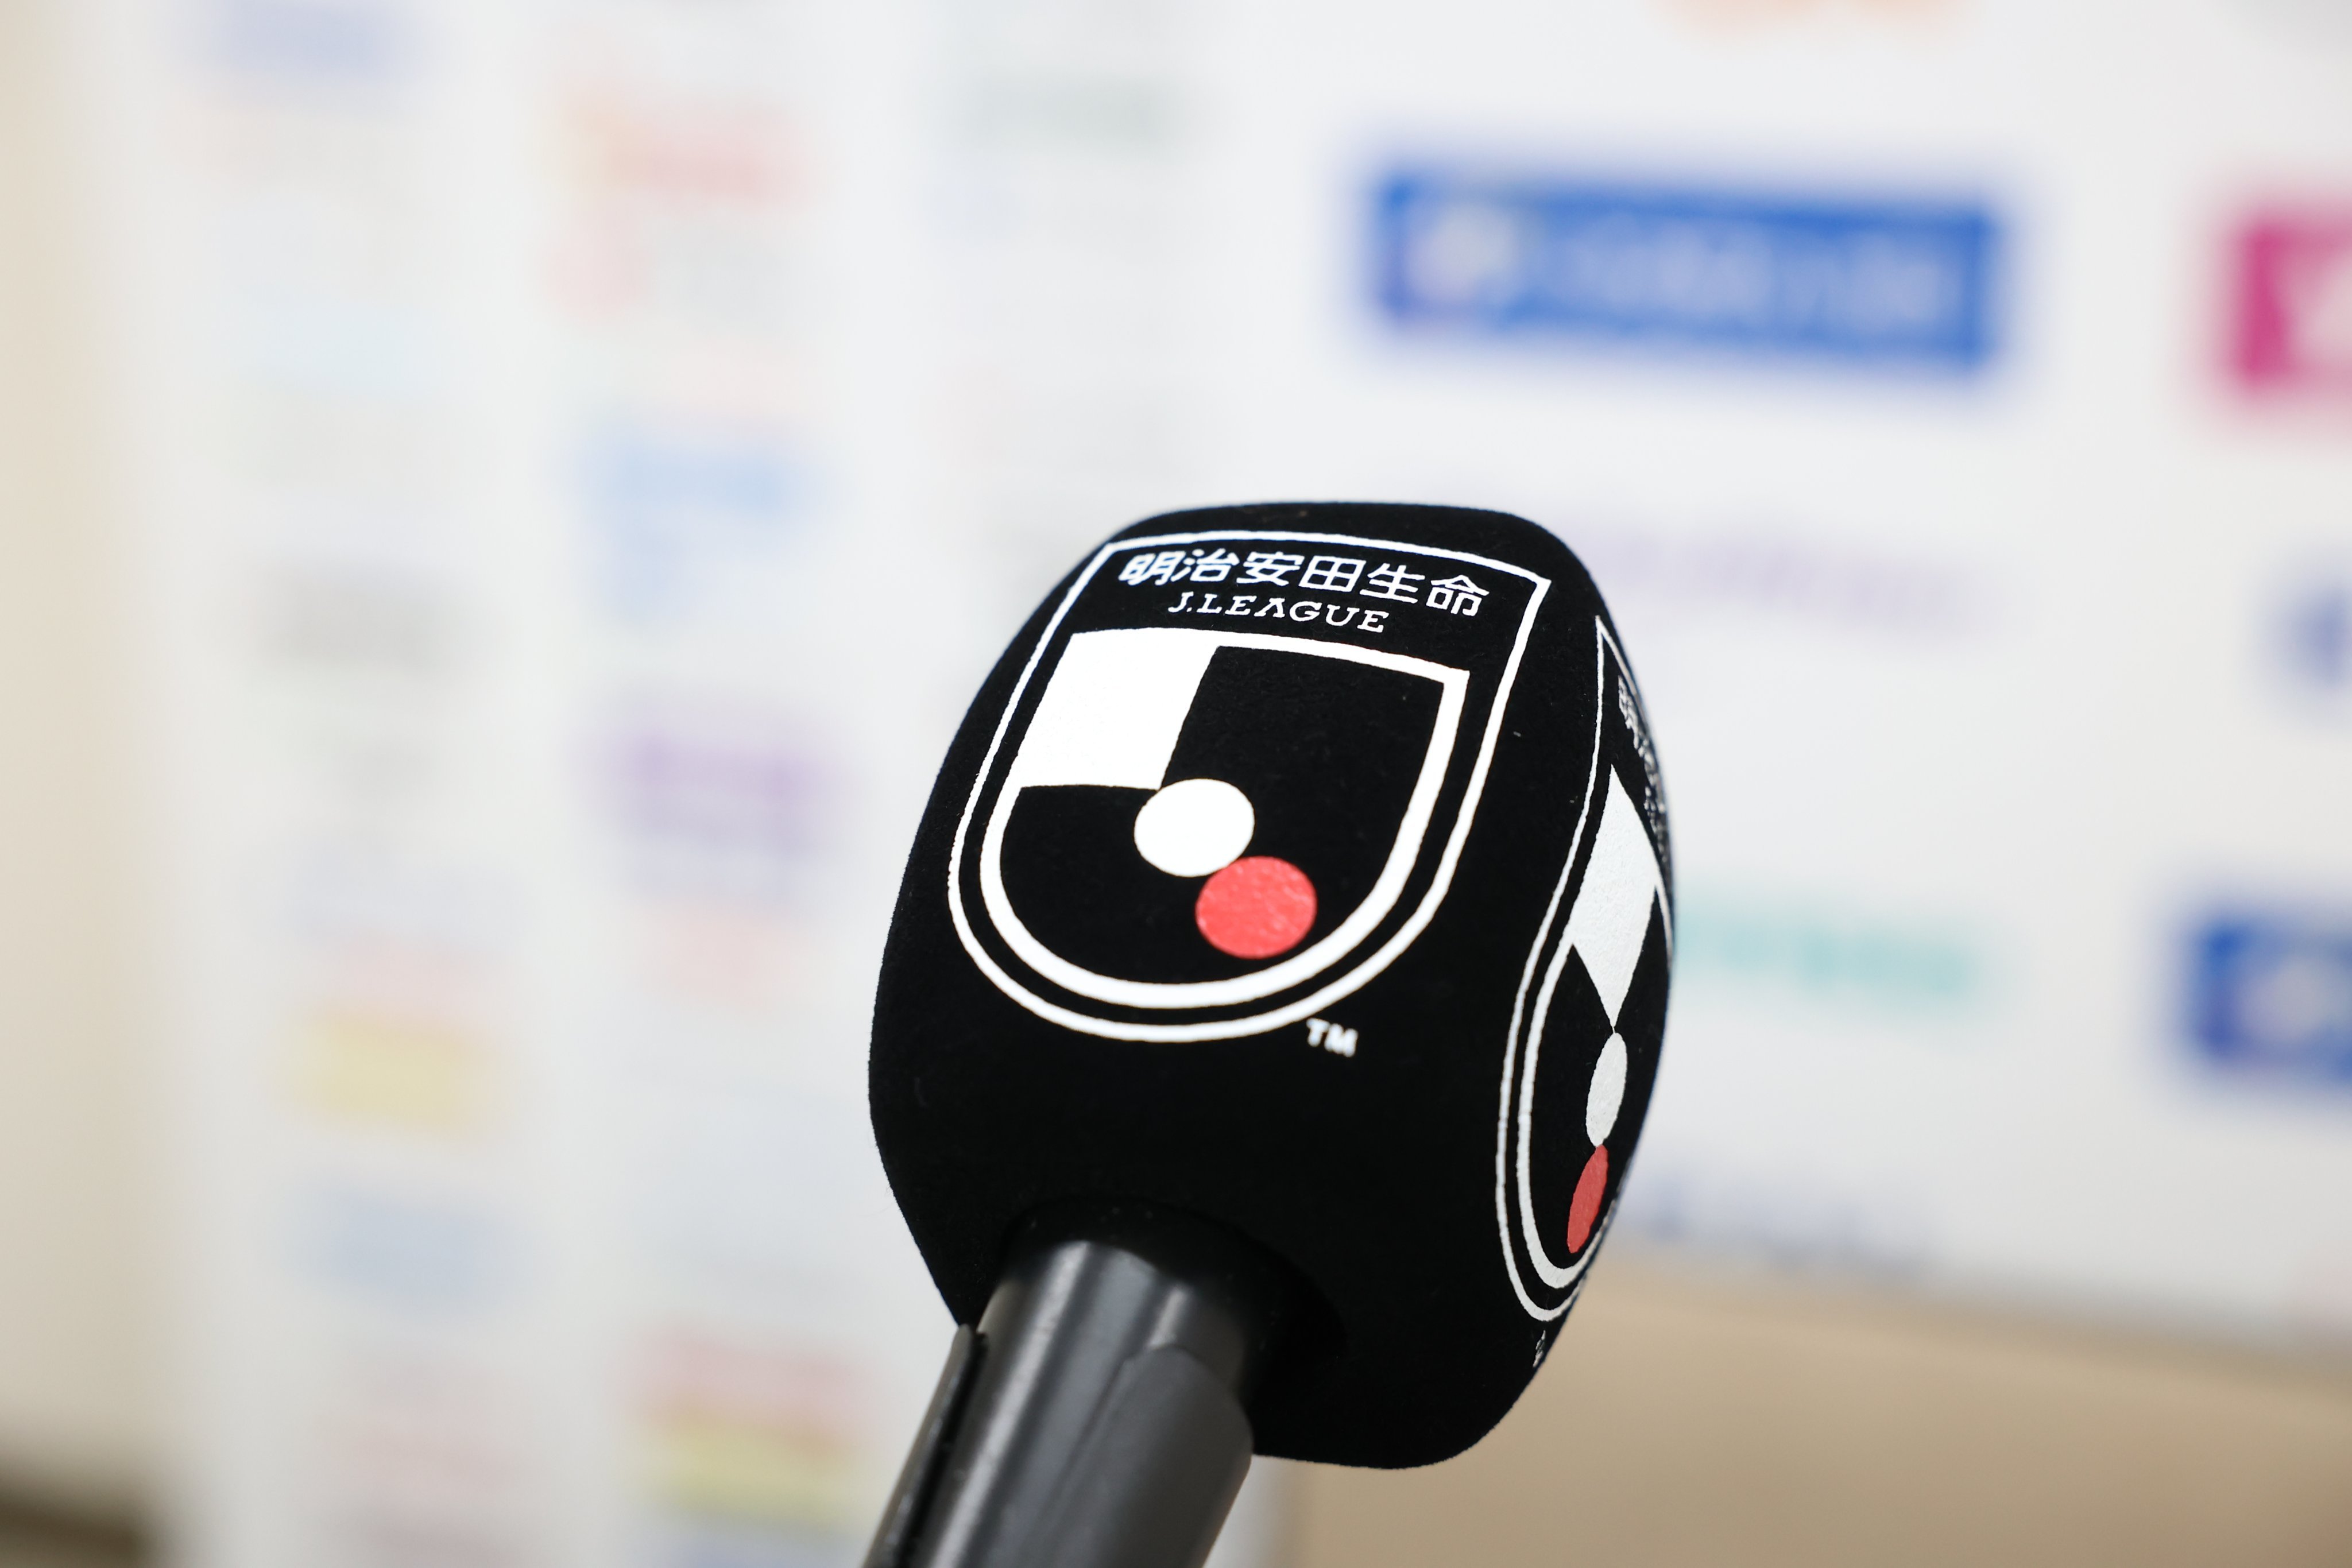 Jadwal Siaran Langsung J1 League Pekan Ke-13